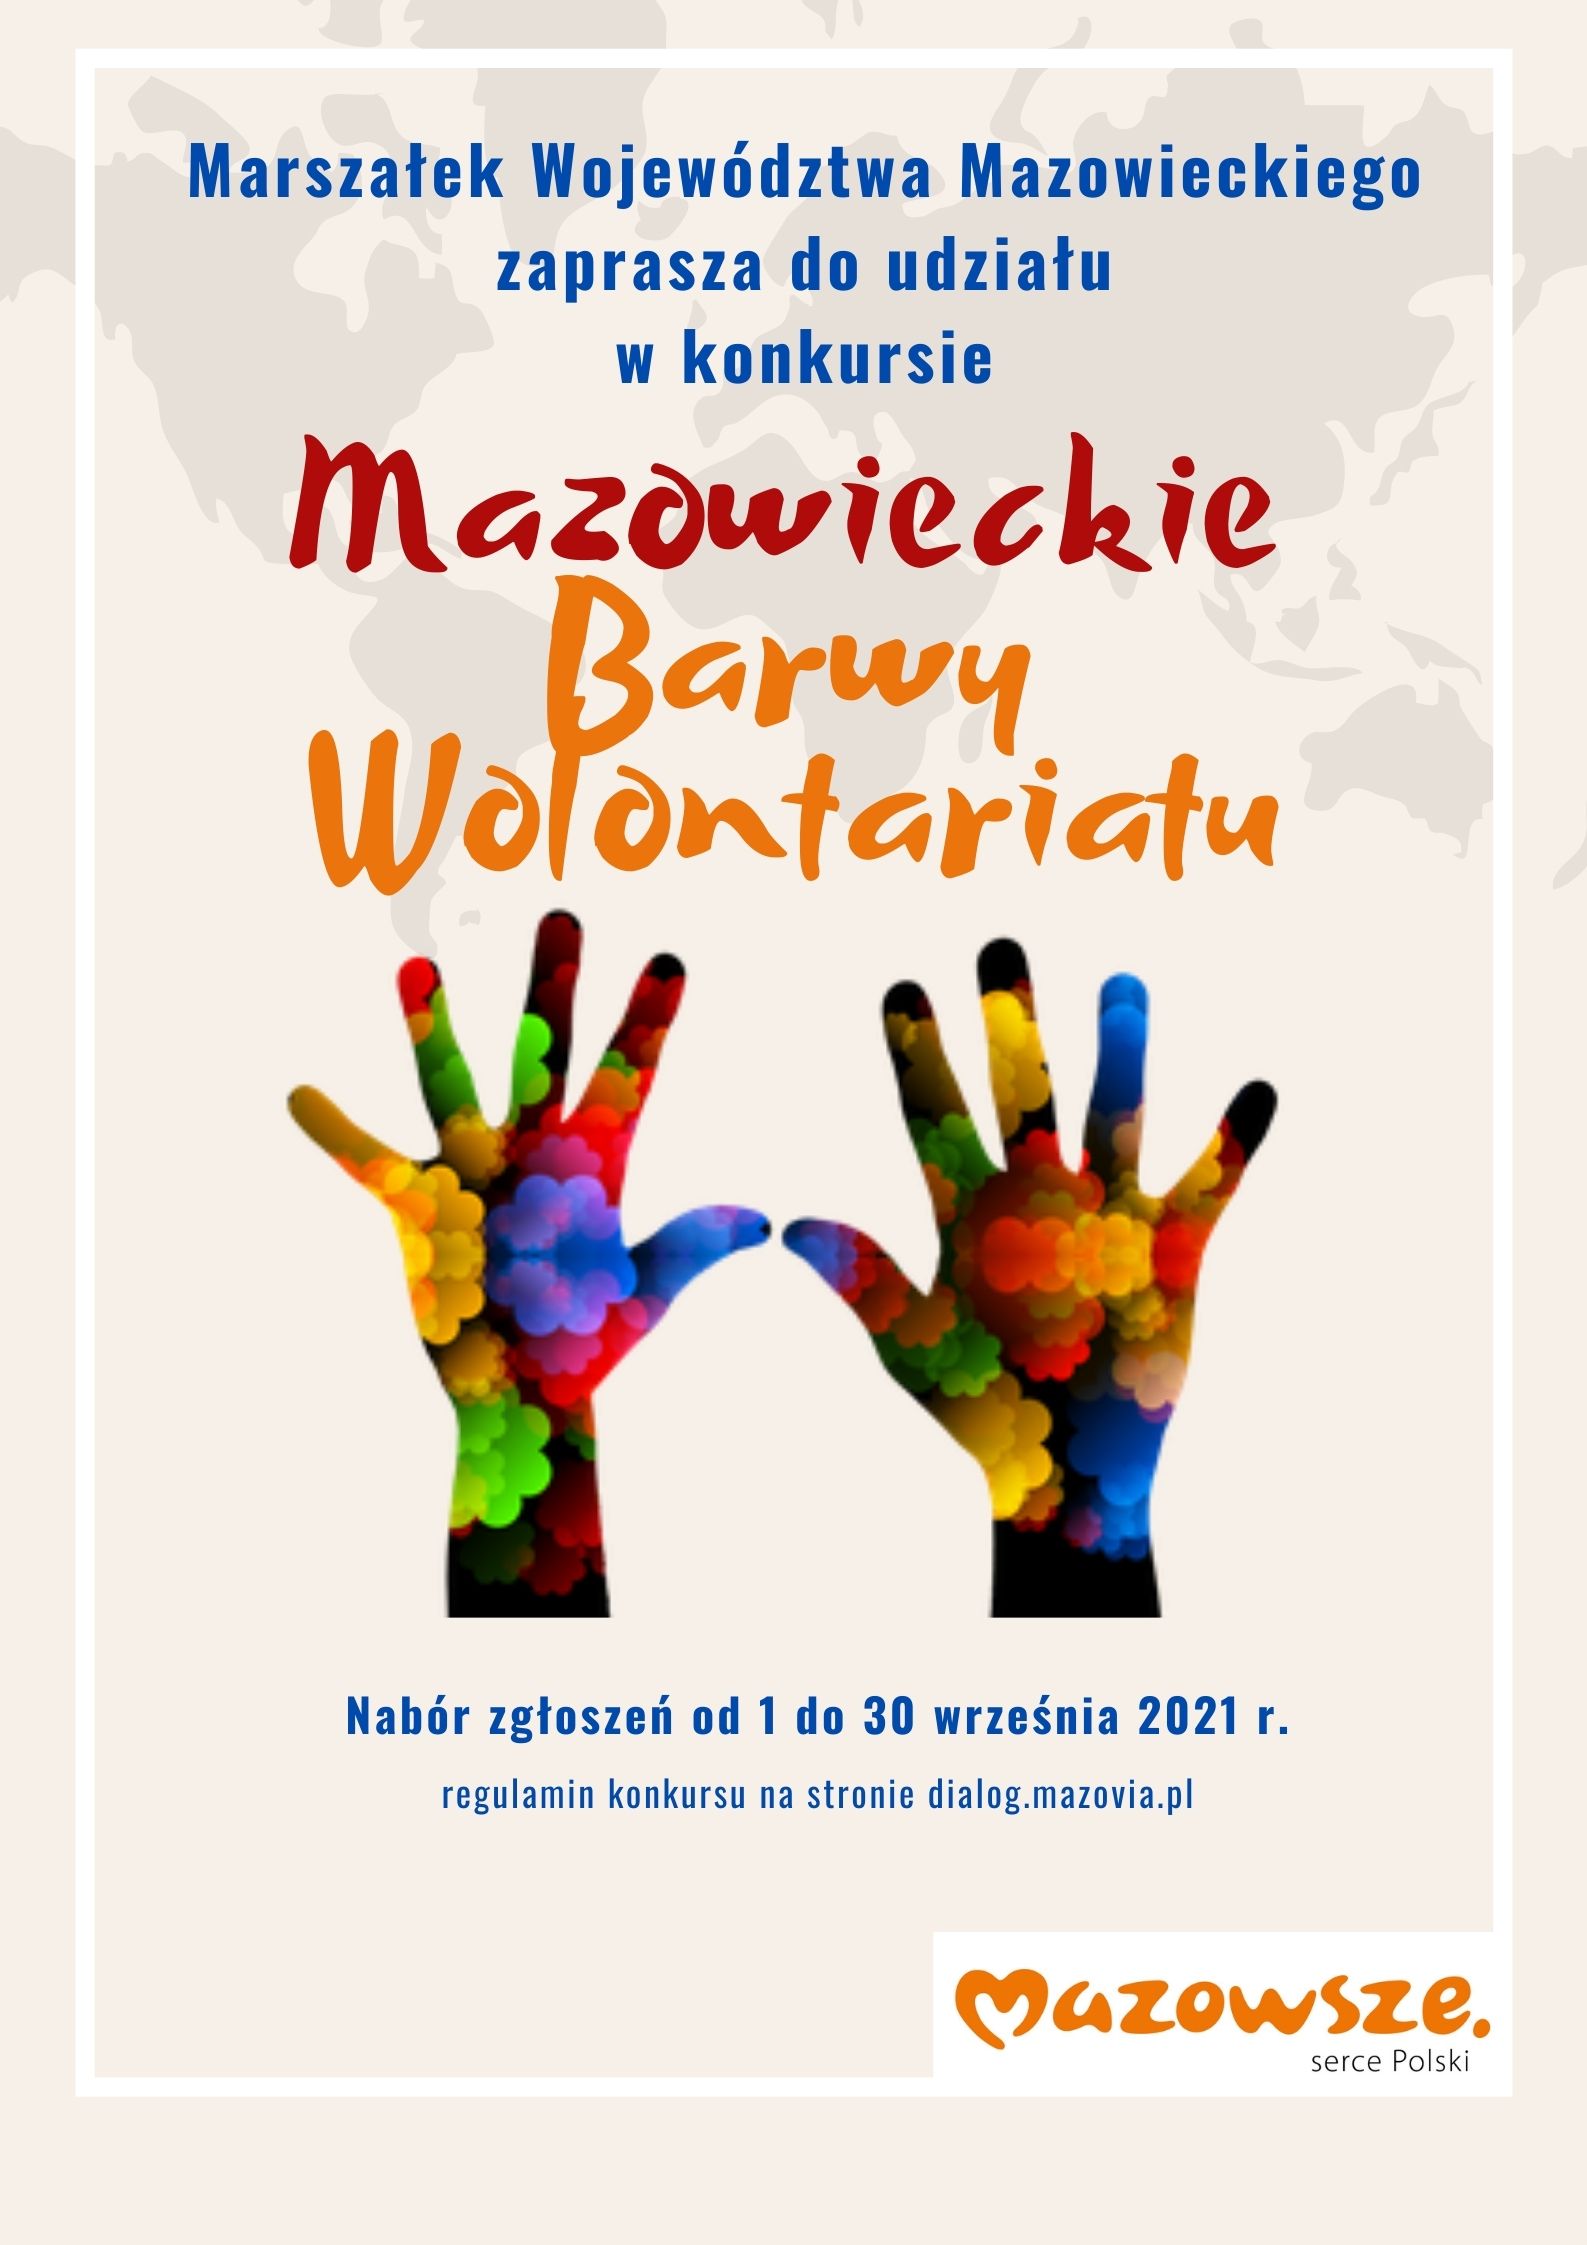 Plakat promujący konkurs Mazowieckie Barwy Wolontariatu